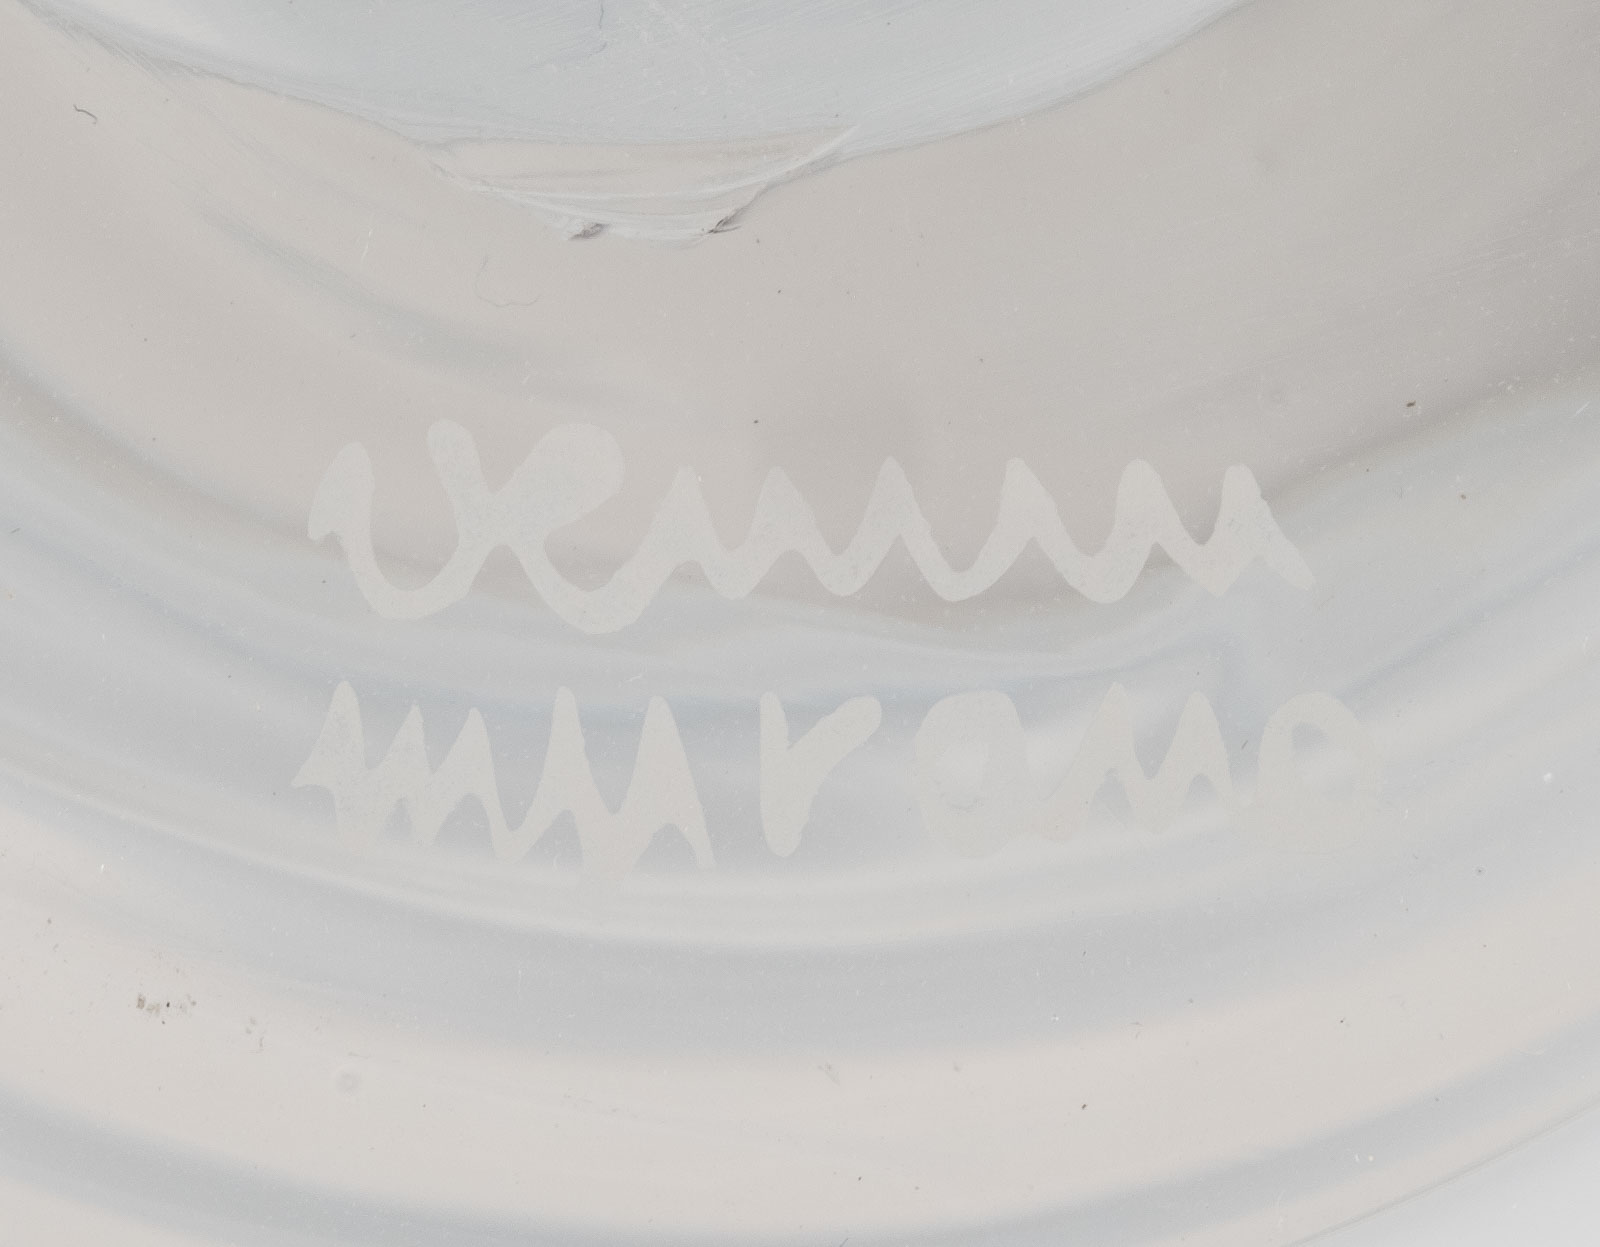 Vase 'A Fasce Spirale' - Image 2 of 2